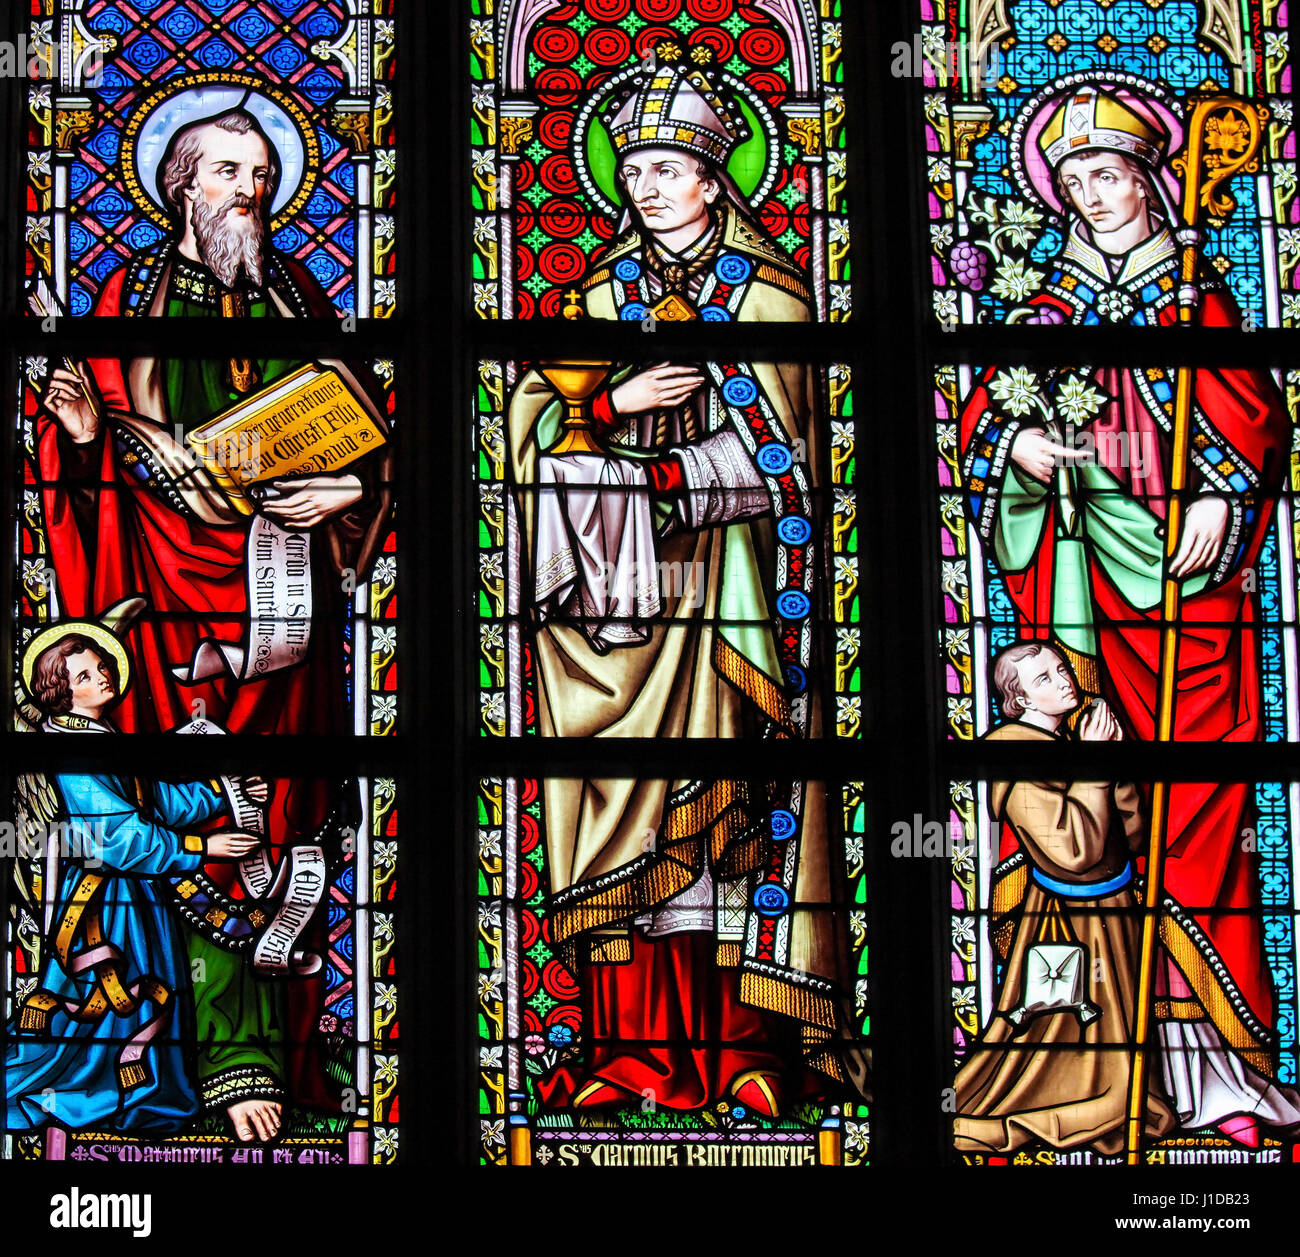 Vetro colorato nella chiesa della Madonna di Sablon a Bruxelles, Belgio, raffiguranti santi cattolici Foto Stock